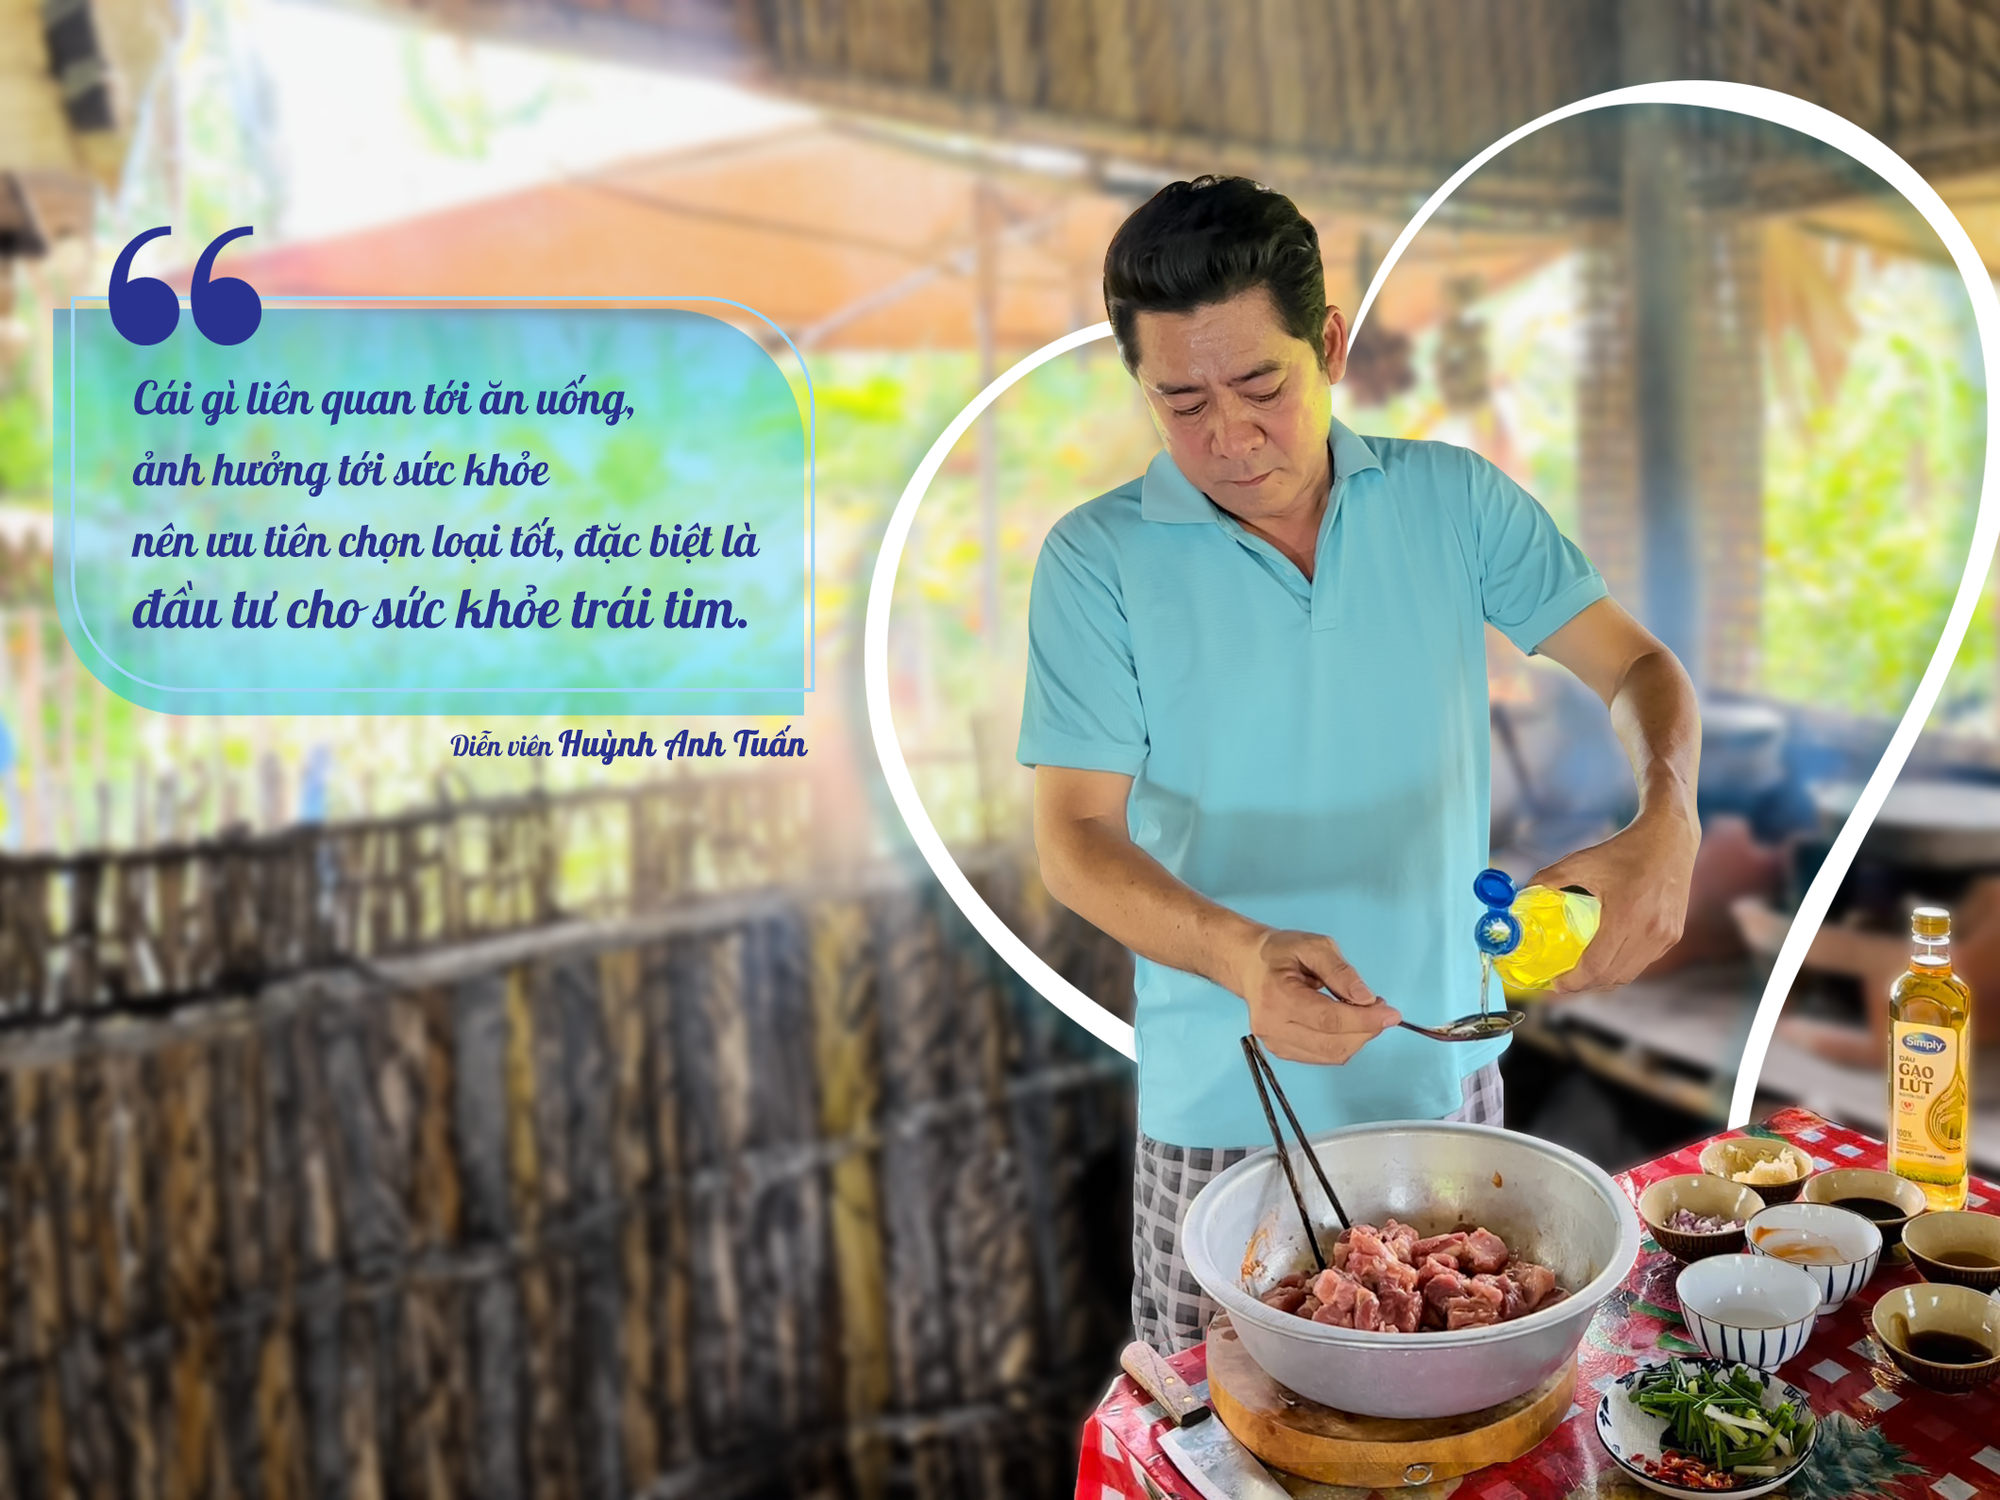 “Đột nhập” nhà sao Việt, học cách đầu tư cho trái tim từ căn bếp - Ảnh 5.